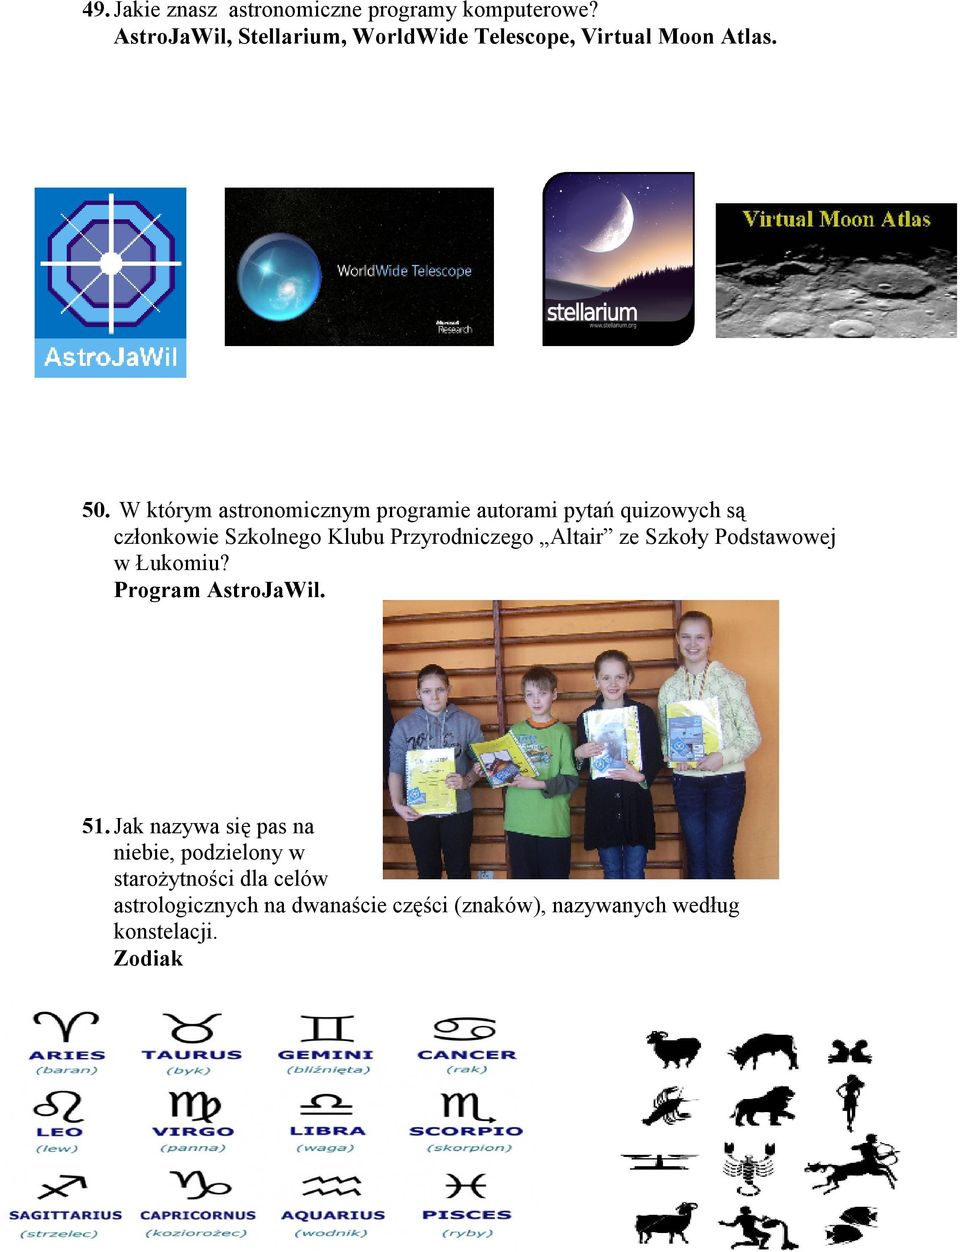 W którym astronomicznym programie autorami pytań quizowych są członkowie Szkolnego Klubu Przyrodniczego